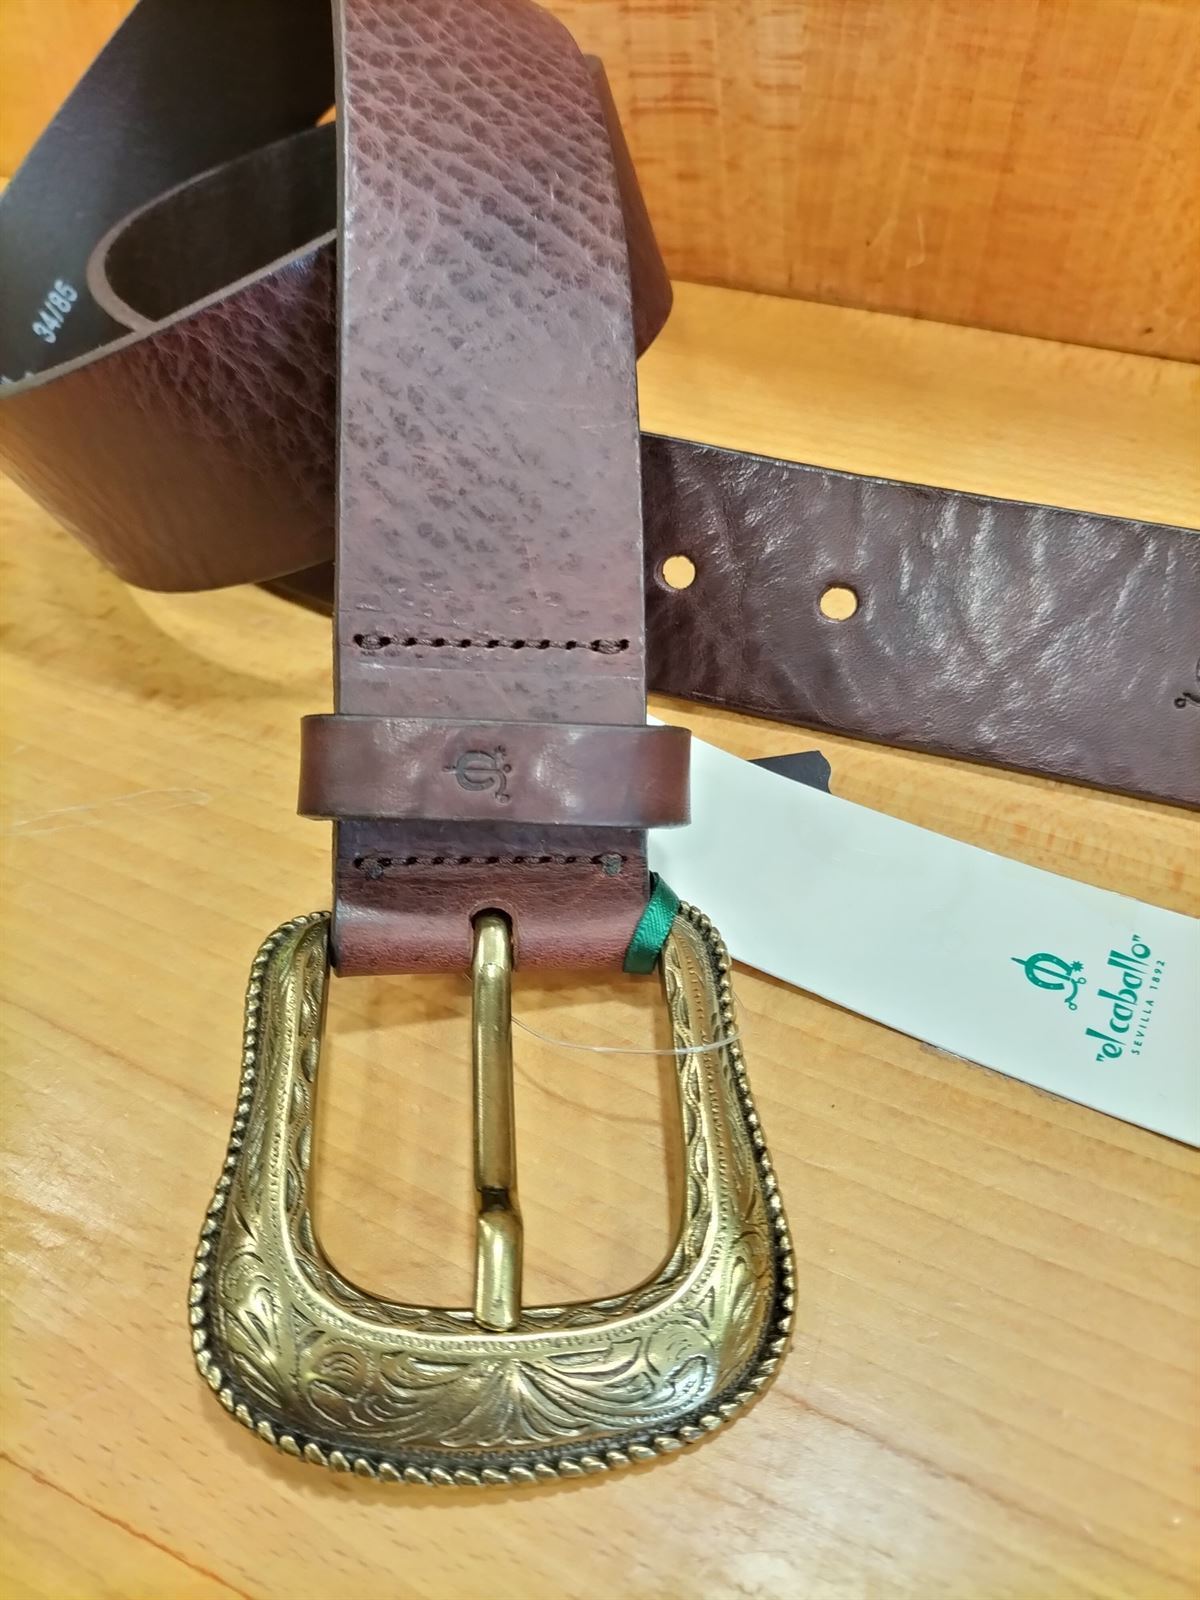 Cinturón cuero mujer "EL CABALLO" color marrón hebilla repujada dorada - Imagen 1